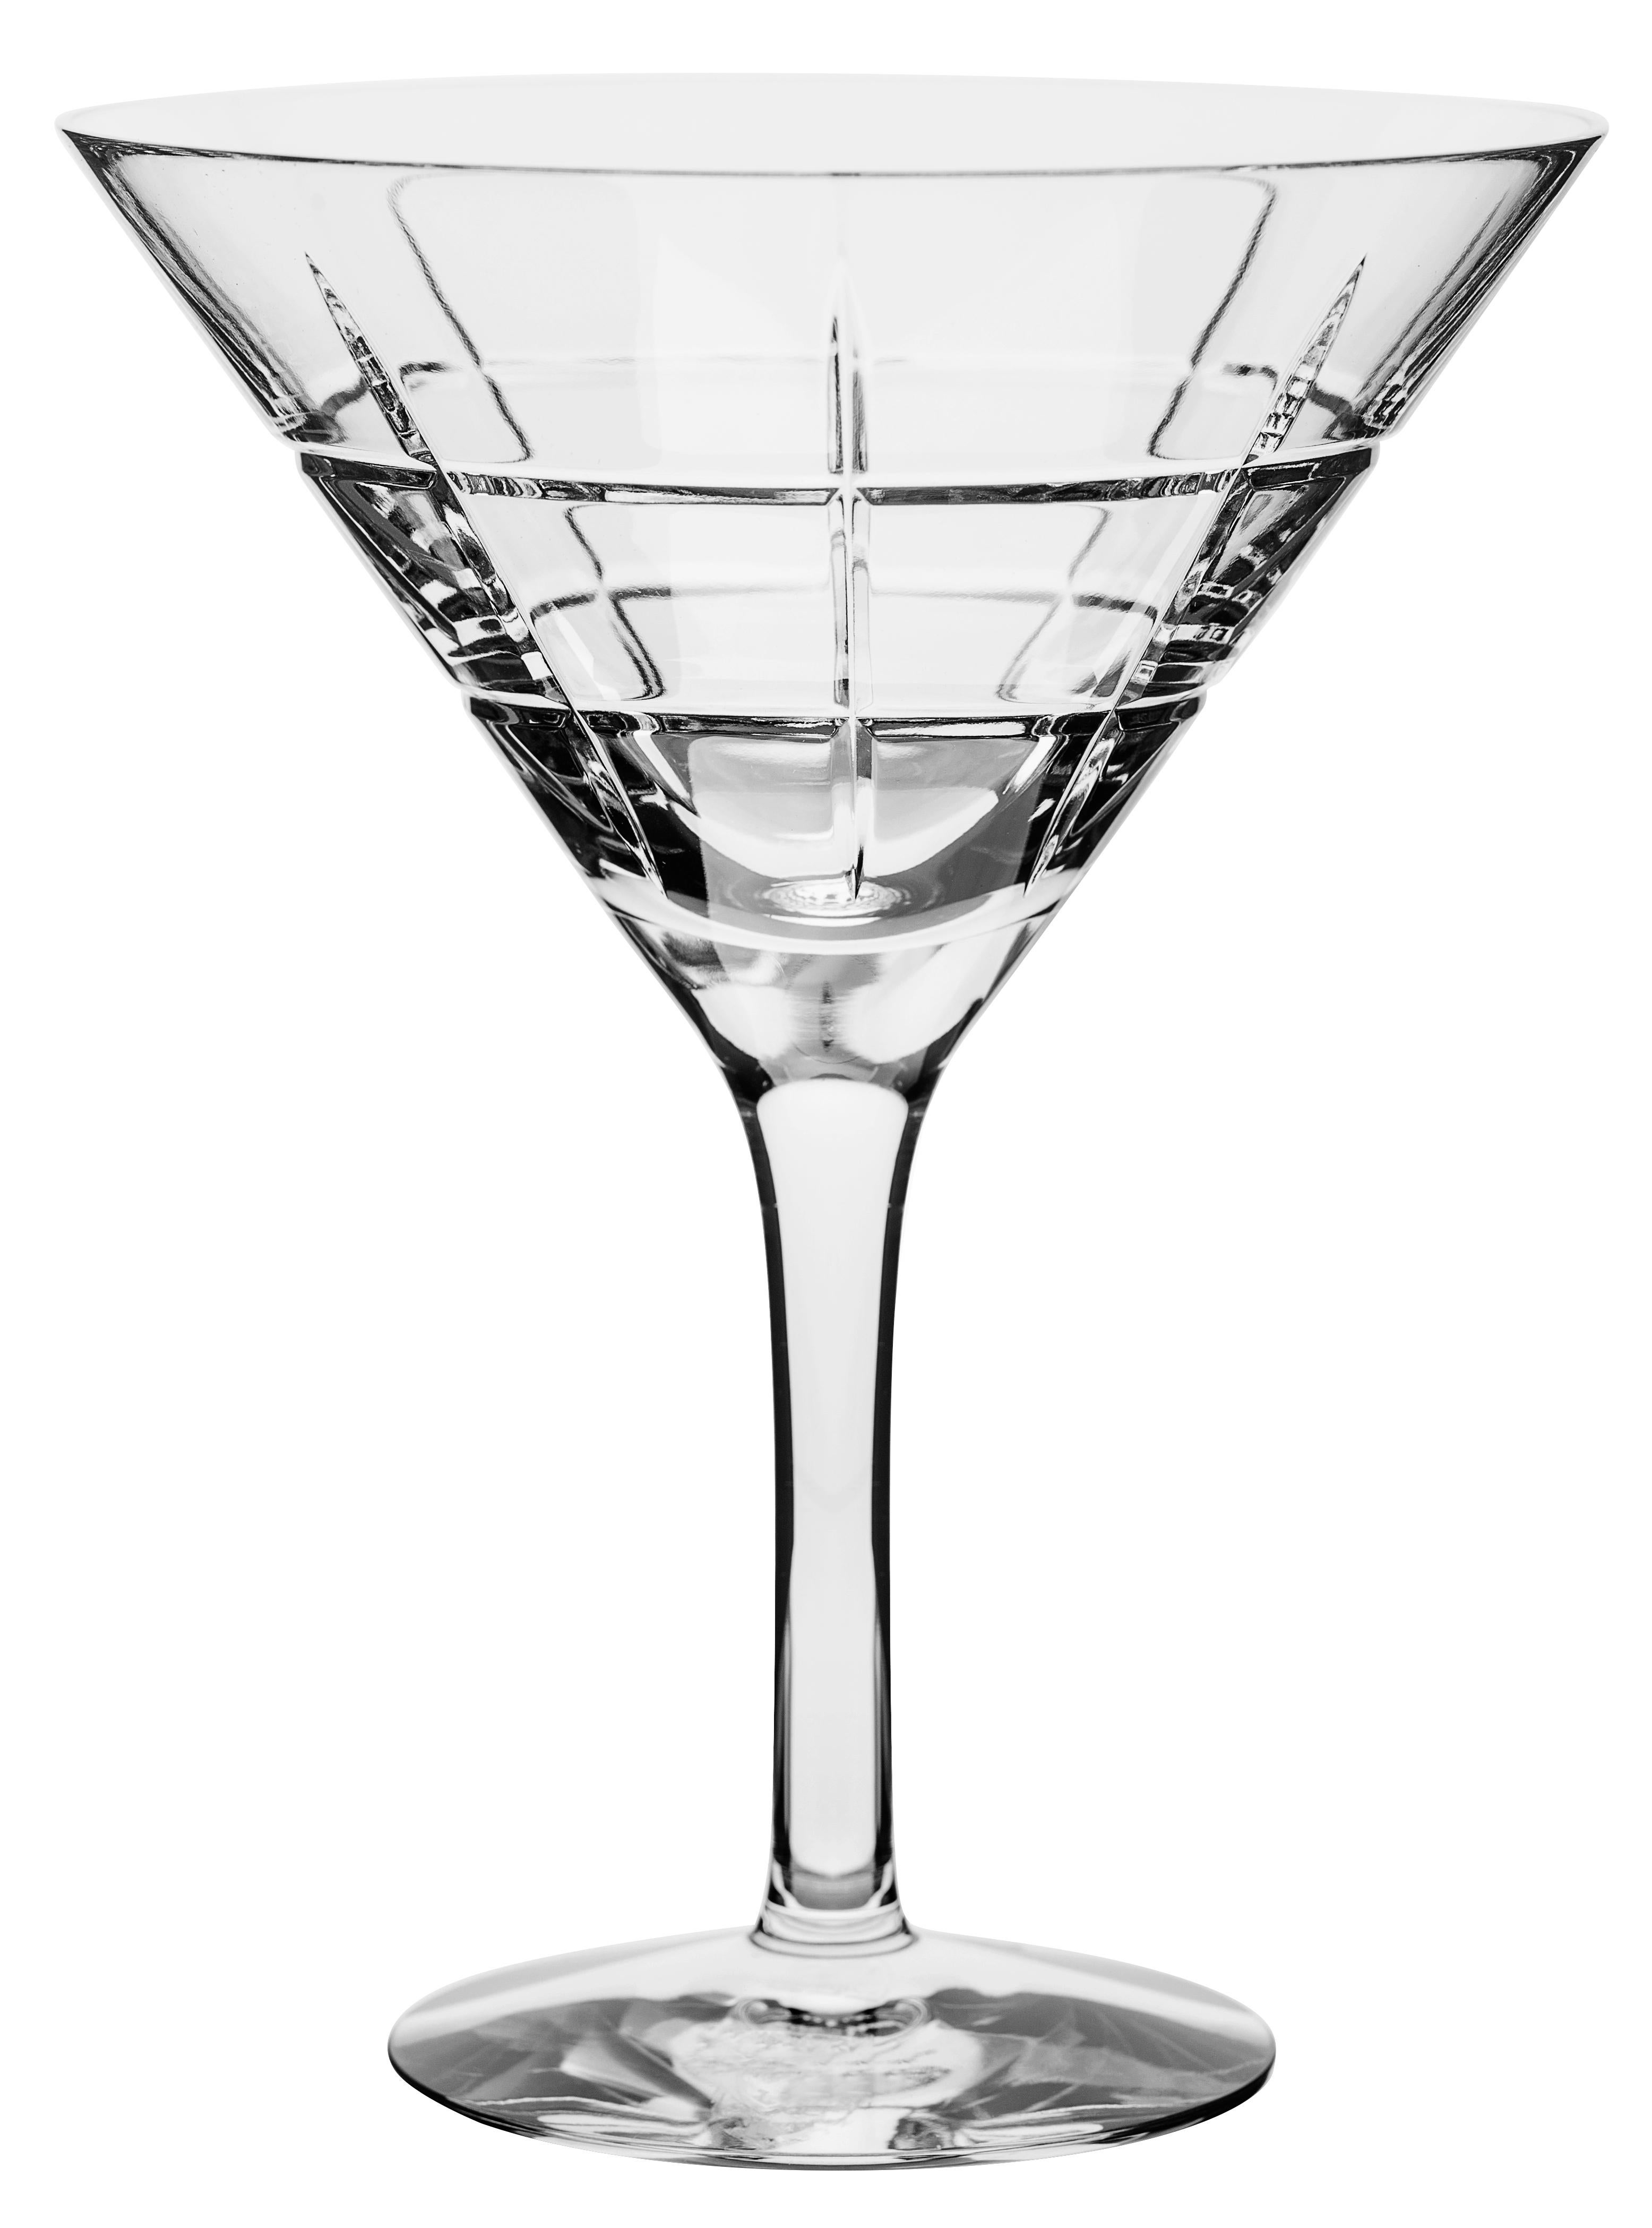 Le Street Martini d'Orrefors, d'une contenance de 7 oz, est idéal pour servir des cocktails, en particulier des martinis ou des cosmopolitains. Le verre à martini présente un motif à carreaux de lignes droites inspiré des rues et avenues